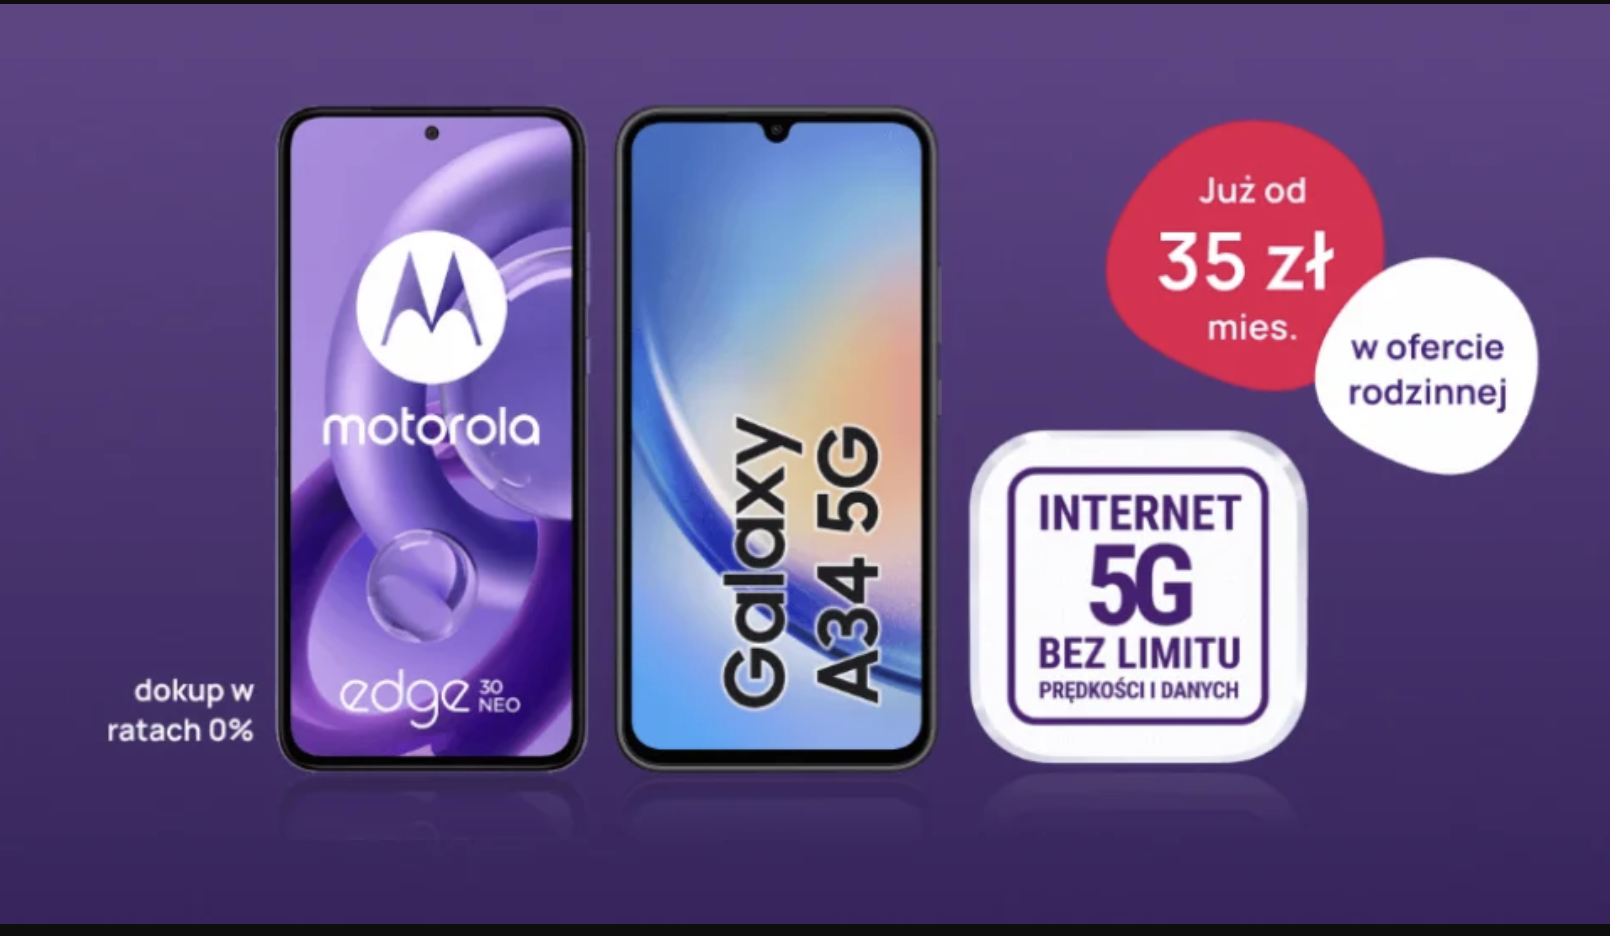 Internet 5G bez limitu prędkości i danych w smartfonie już od 35 zł miesięcznie w ofertach rodzinnych